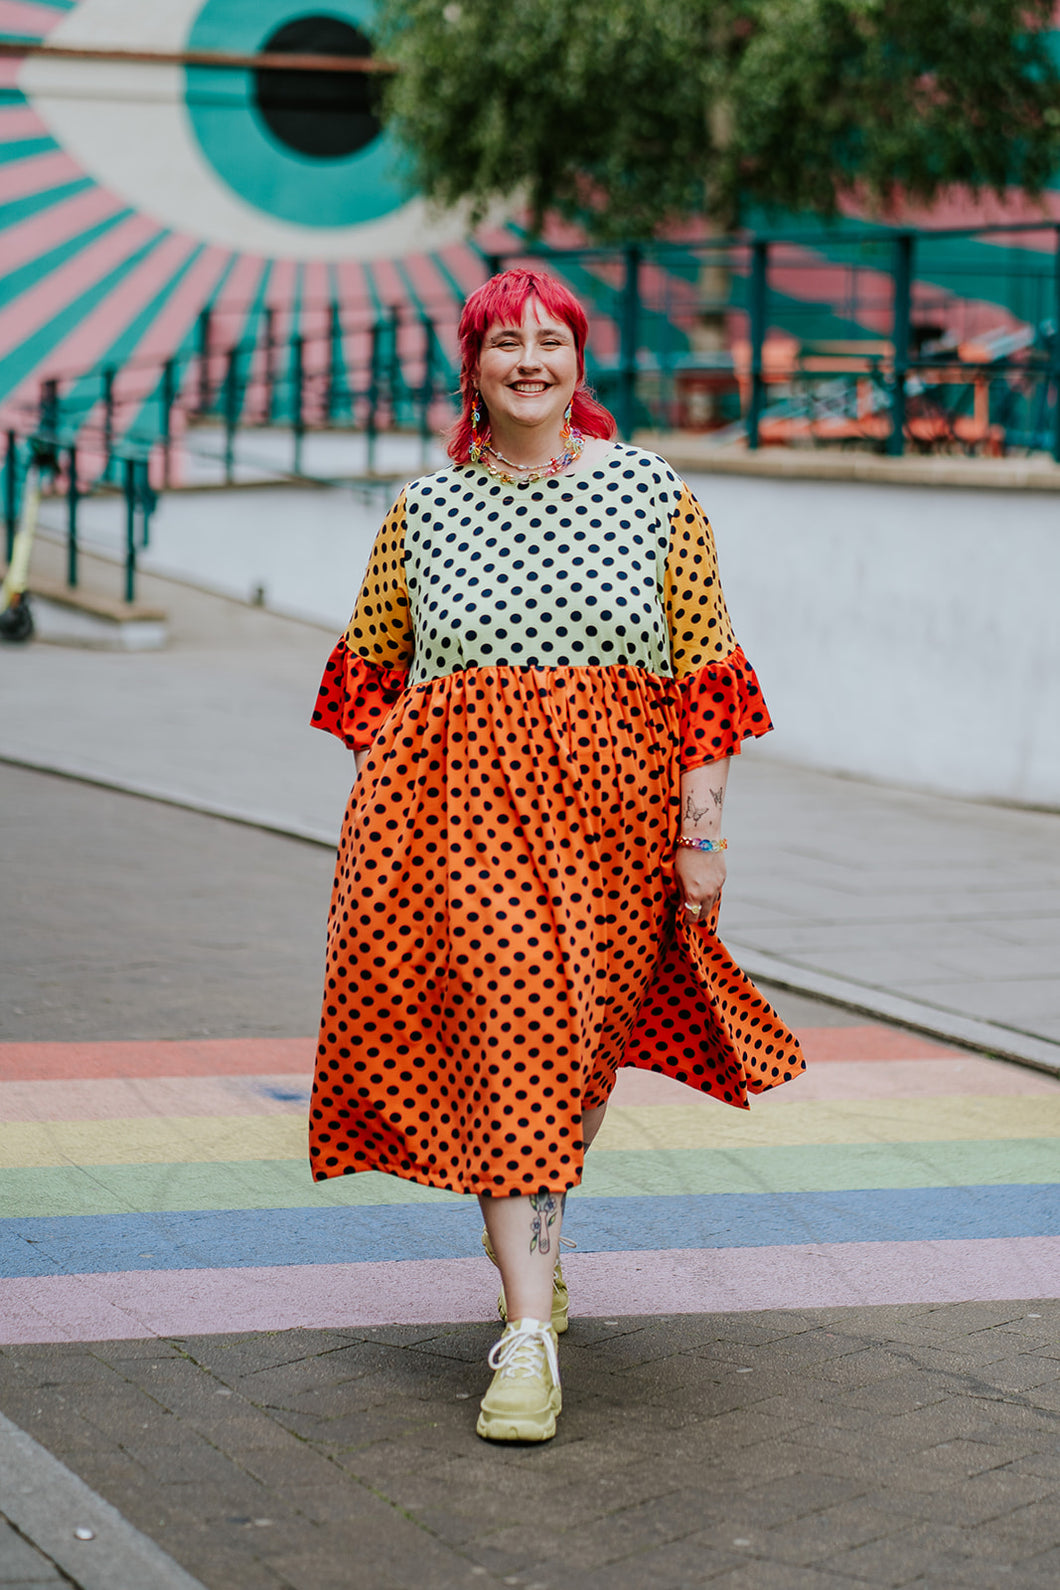 Ruffle Smock Dress in Rainbow Polka Dot